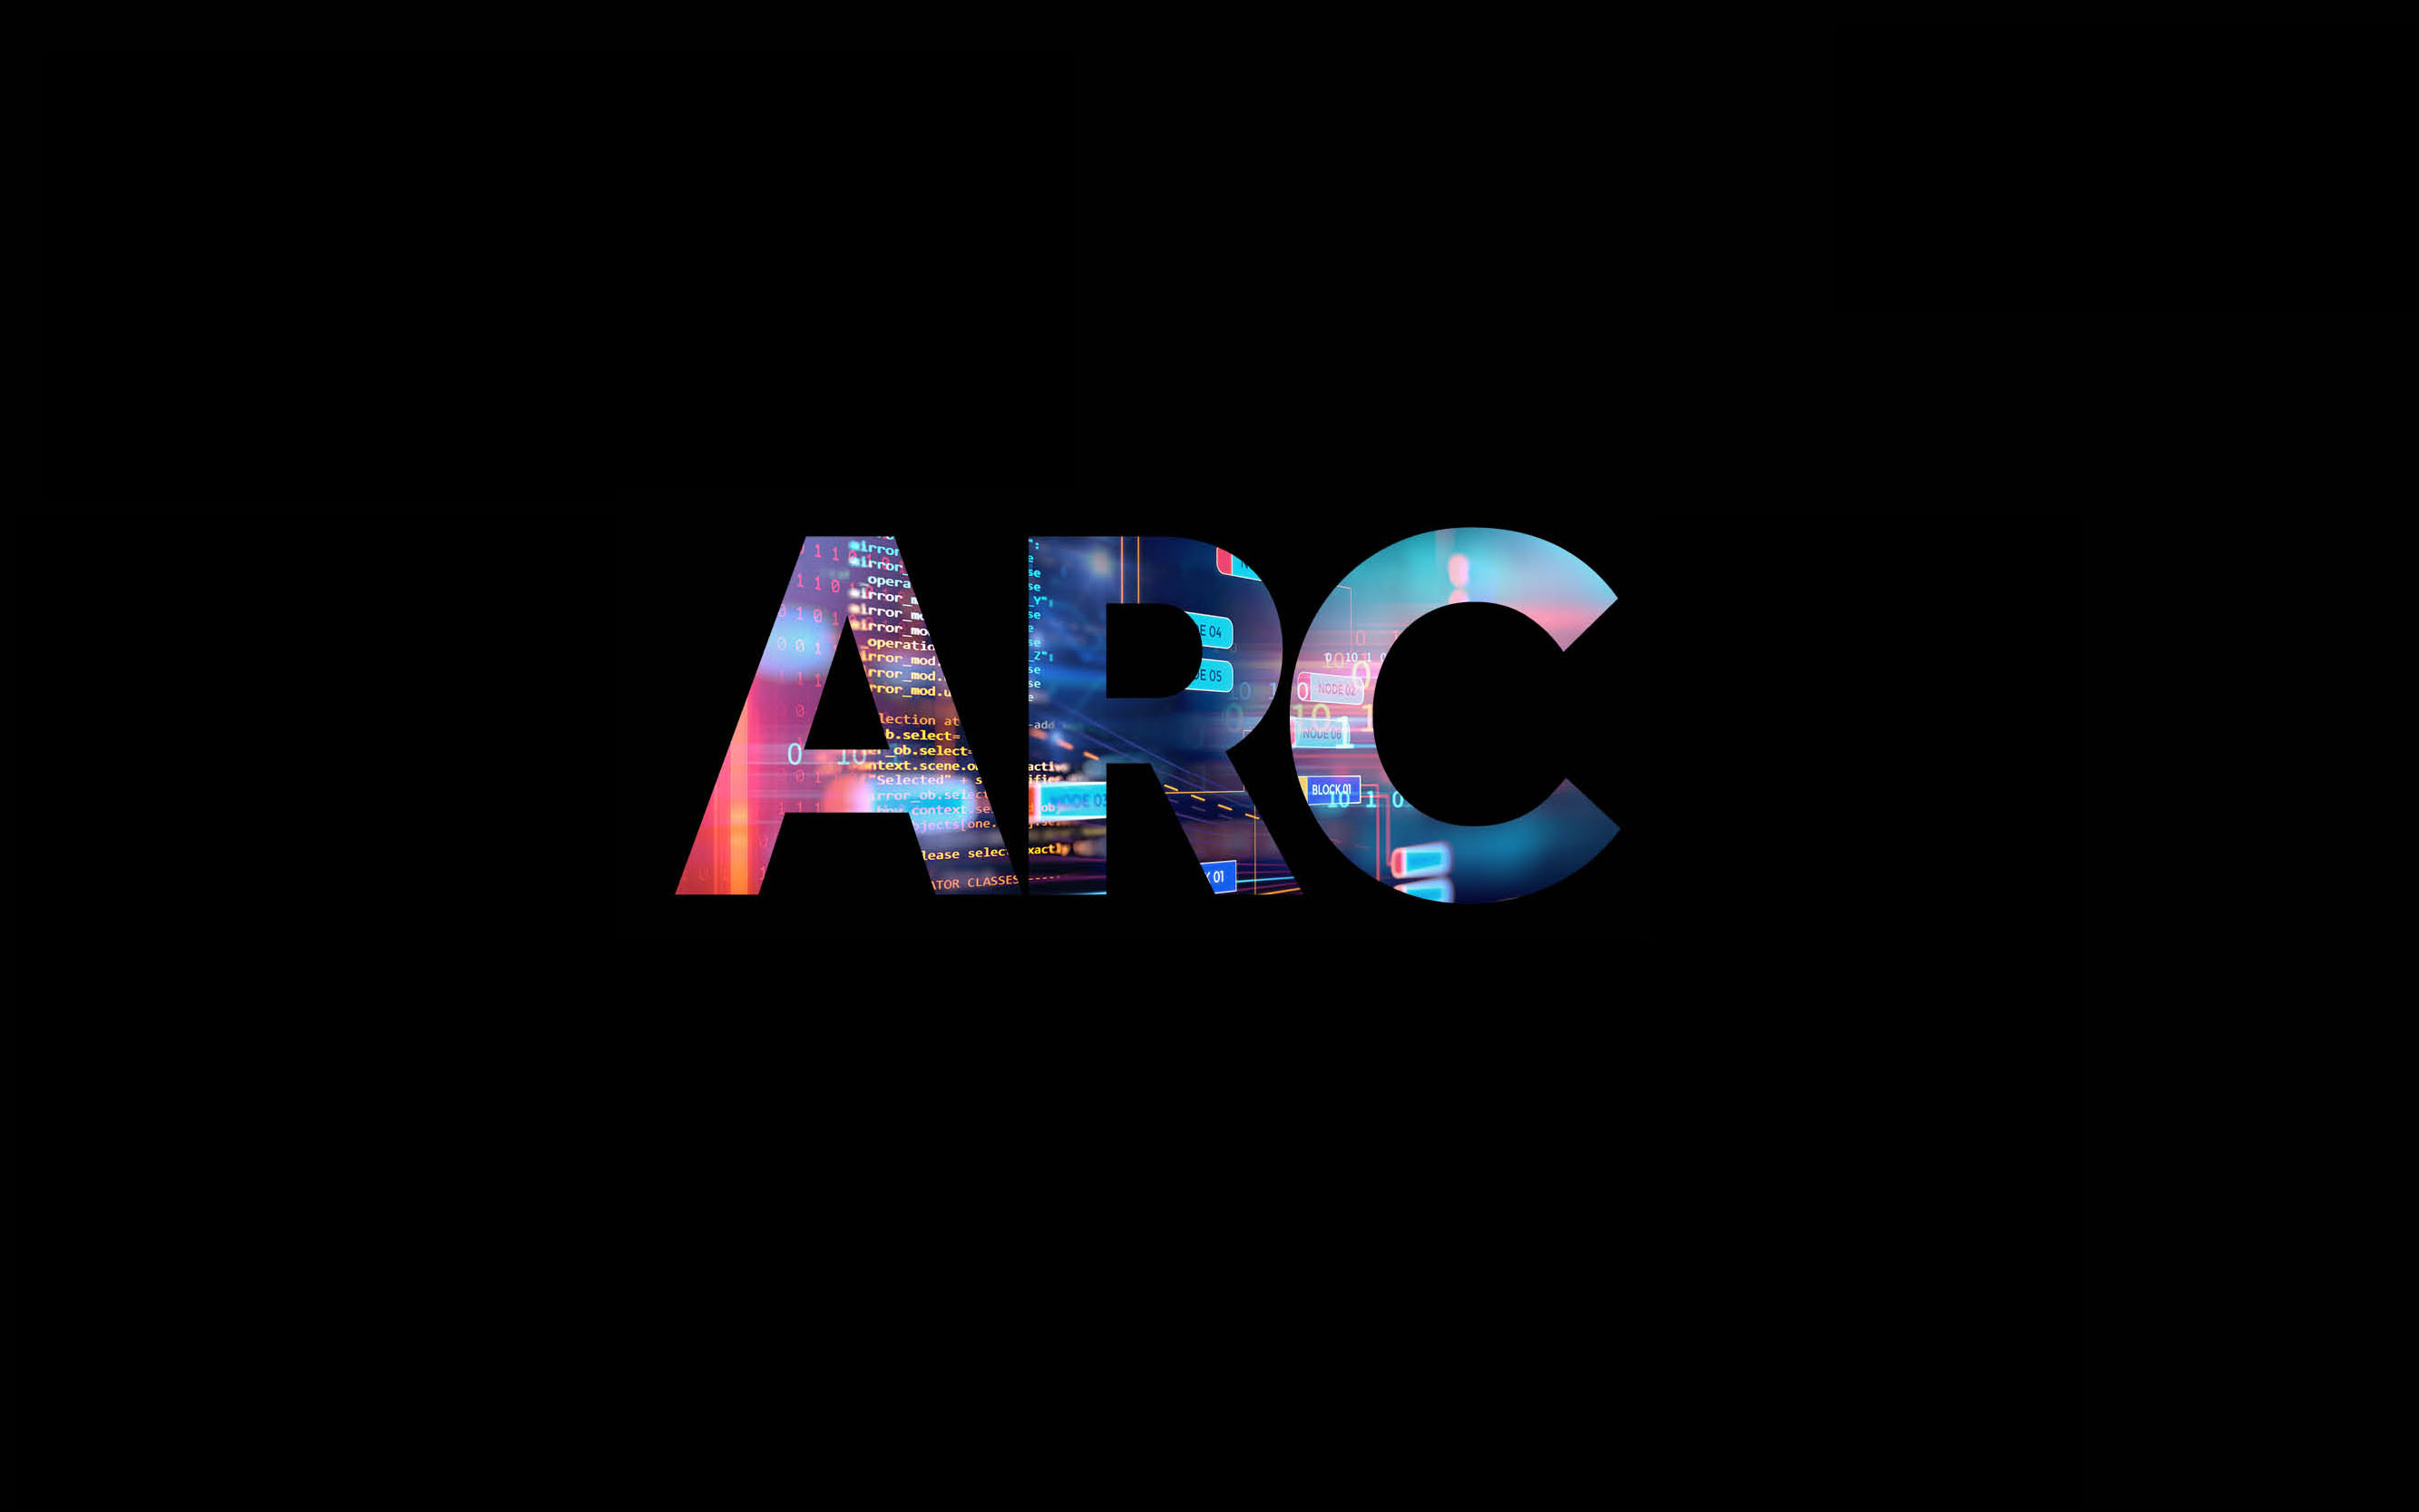 The ARC